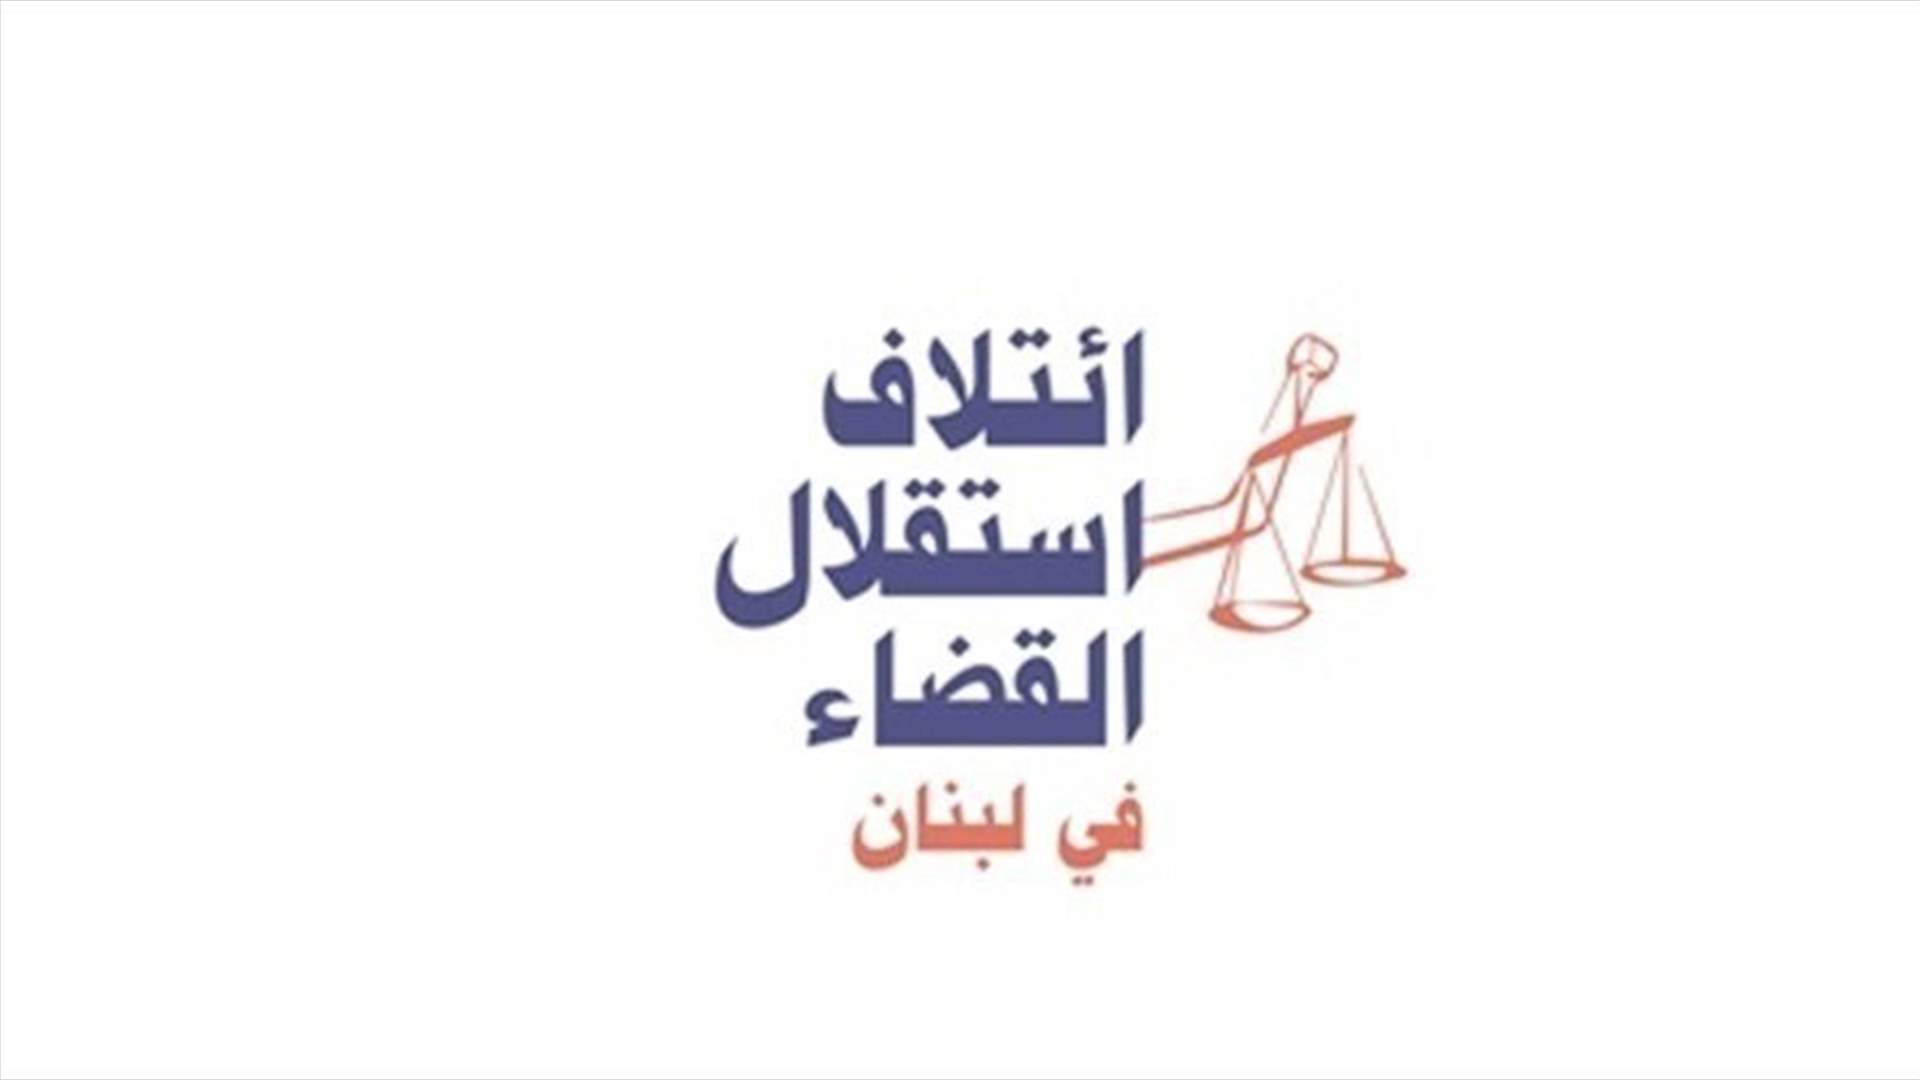 إئتلاف استقلال القضاء تعليقا على ما نشر عن تقديم 4 قضاة استقالاتهم: المرفق القضائي أمام خطر داهم